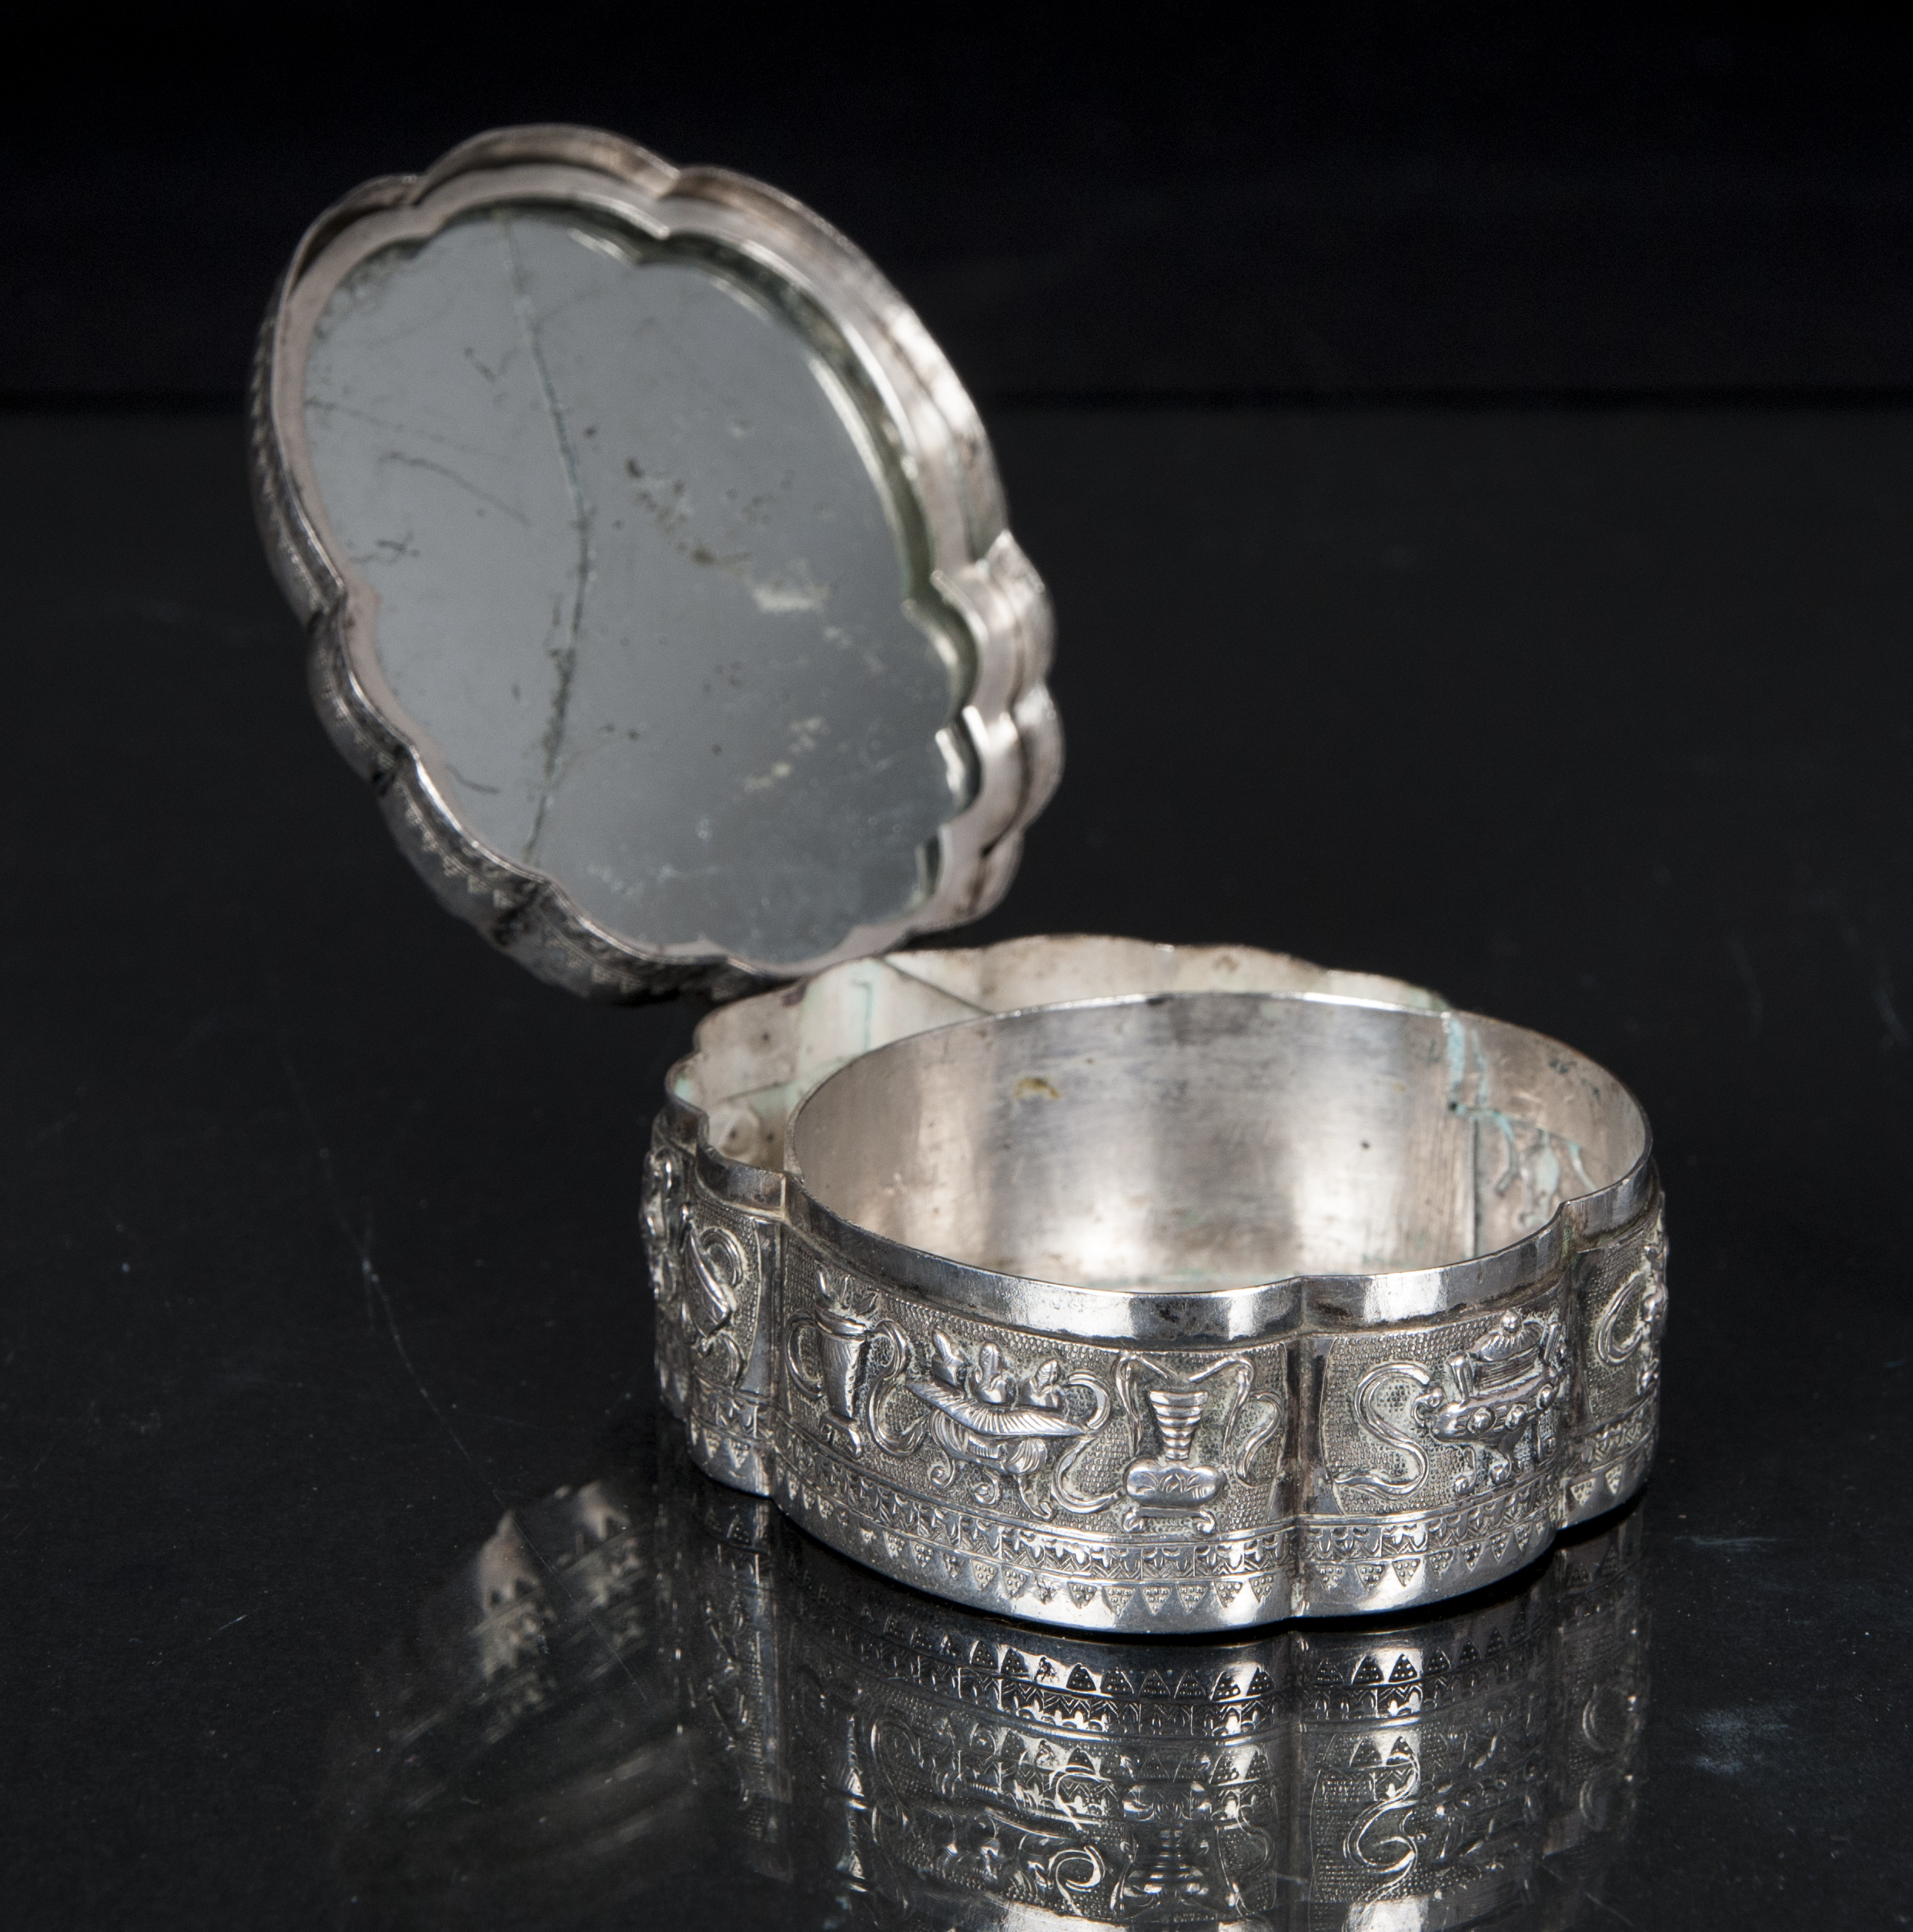 A fine silver box with Buddhist symbols - image 2